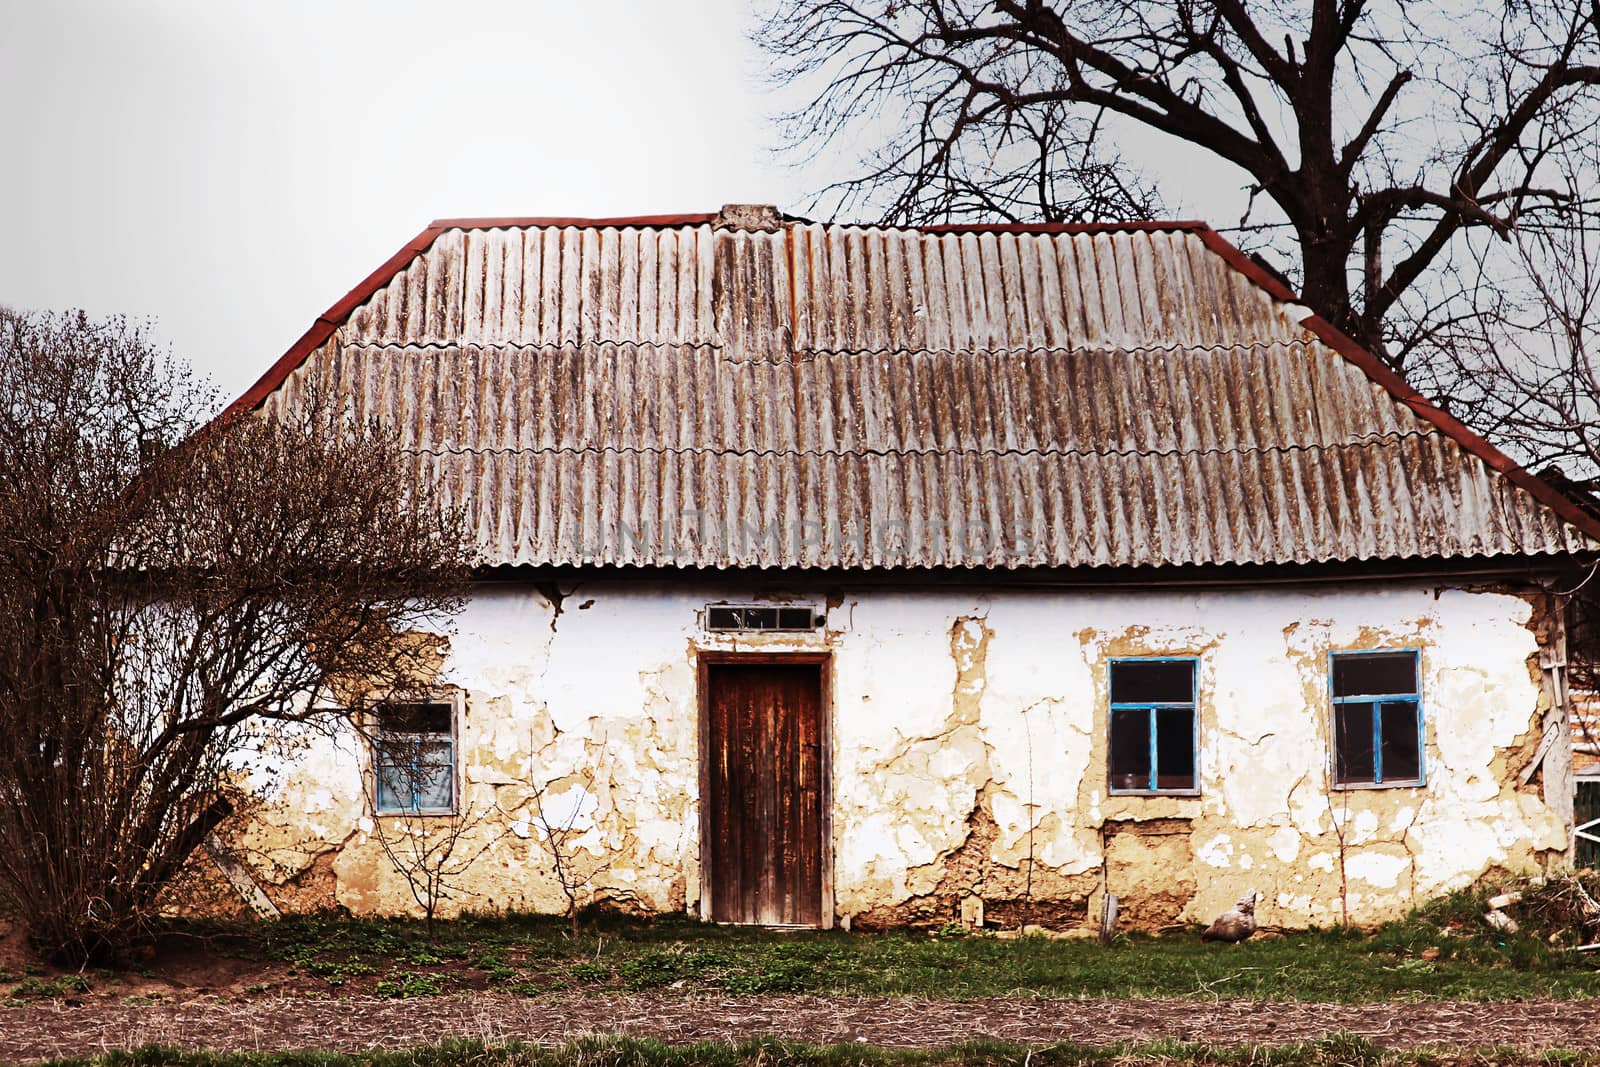 Abandoned old house on dramatic landscape